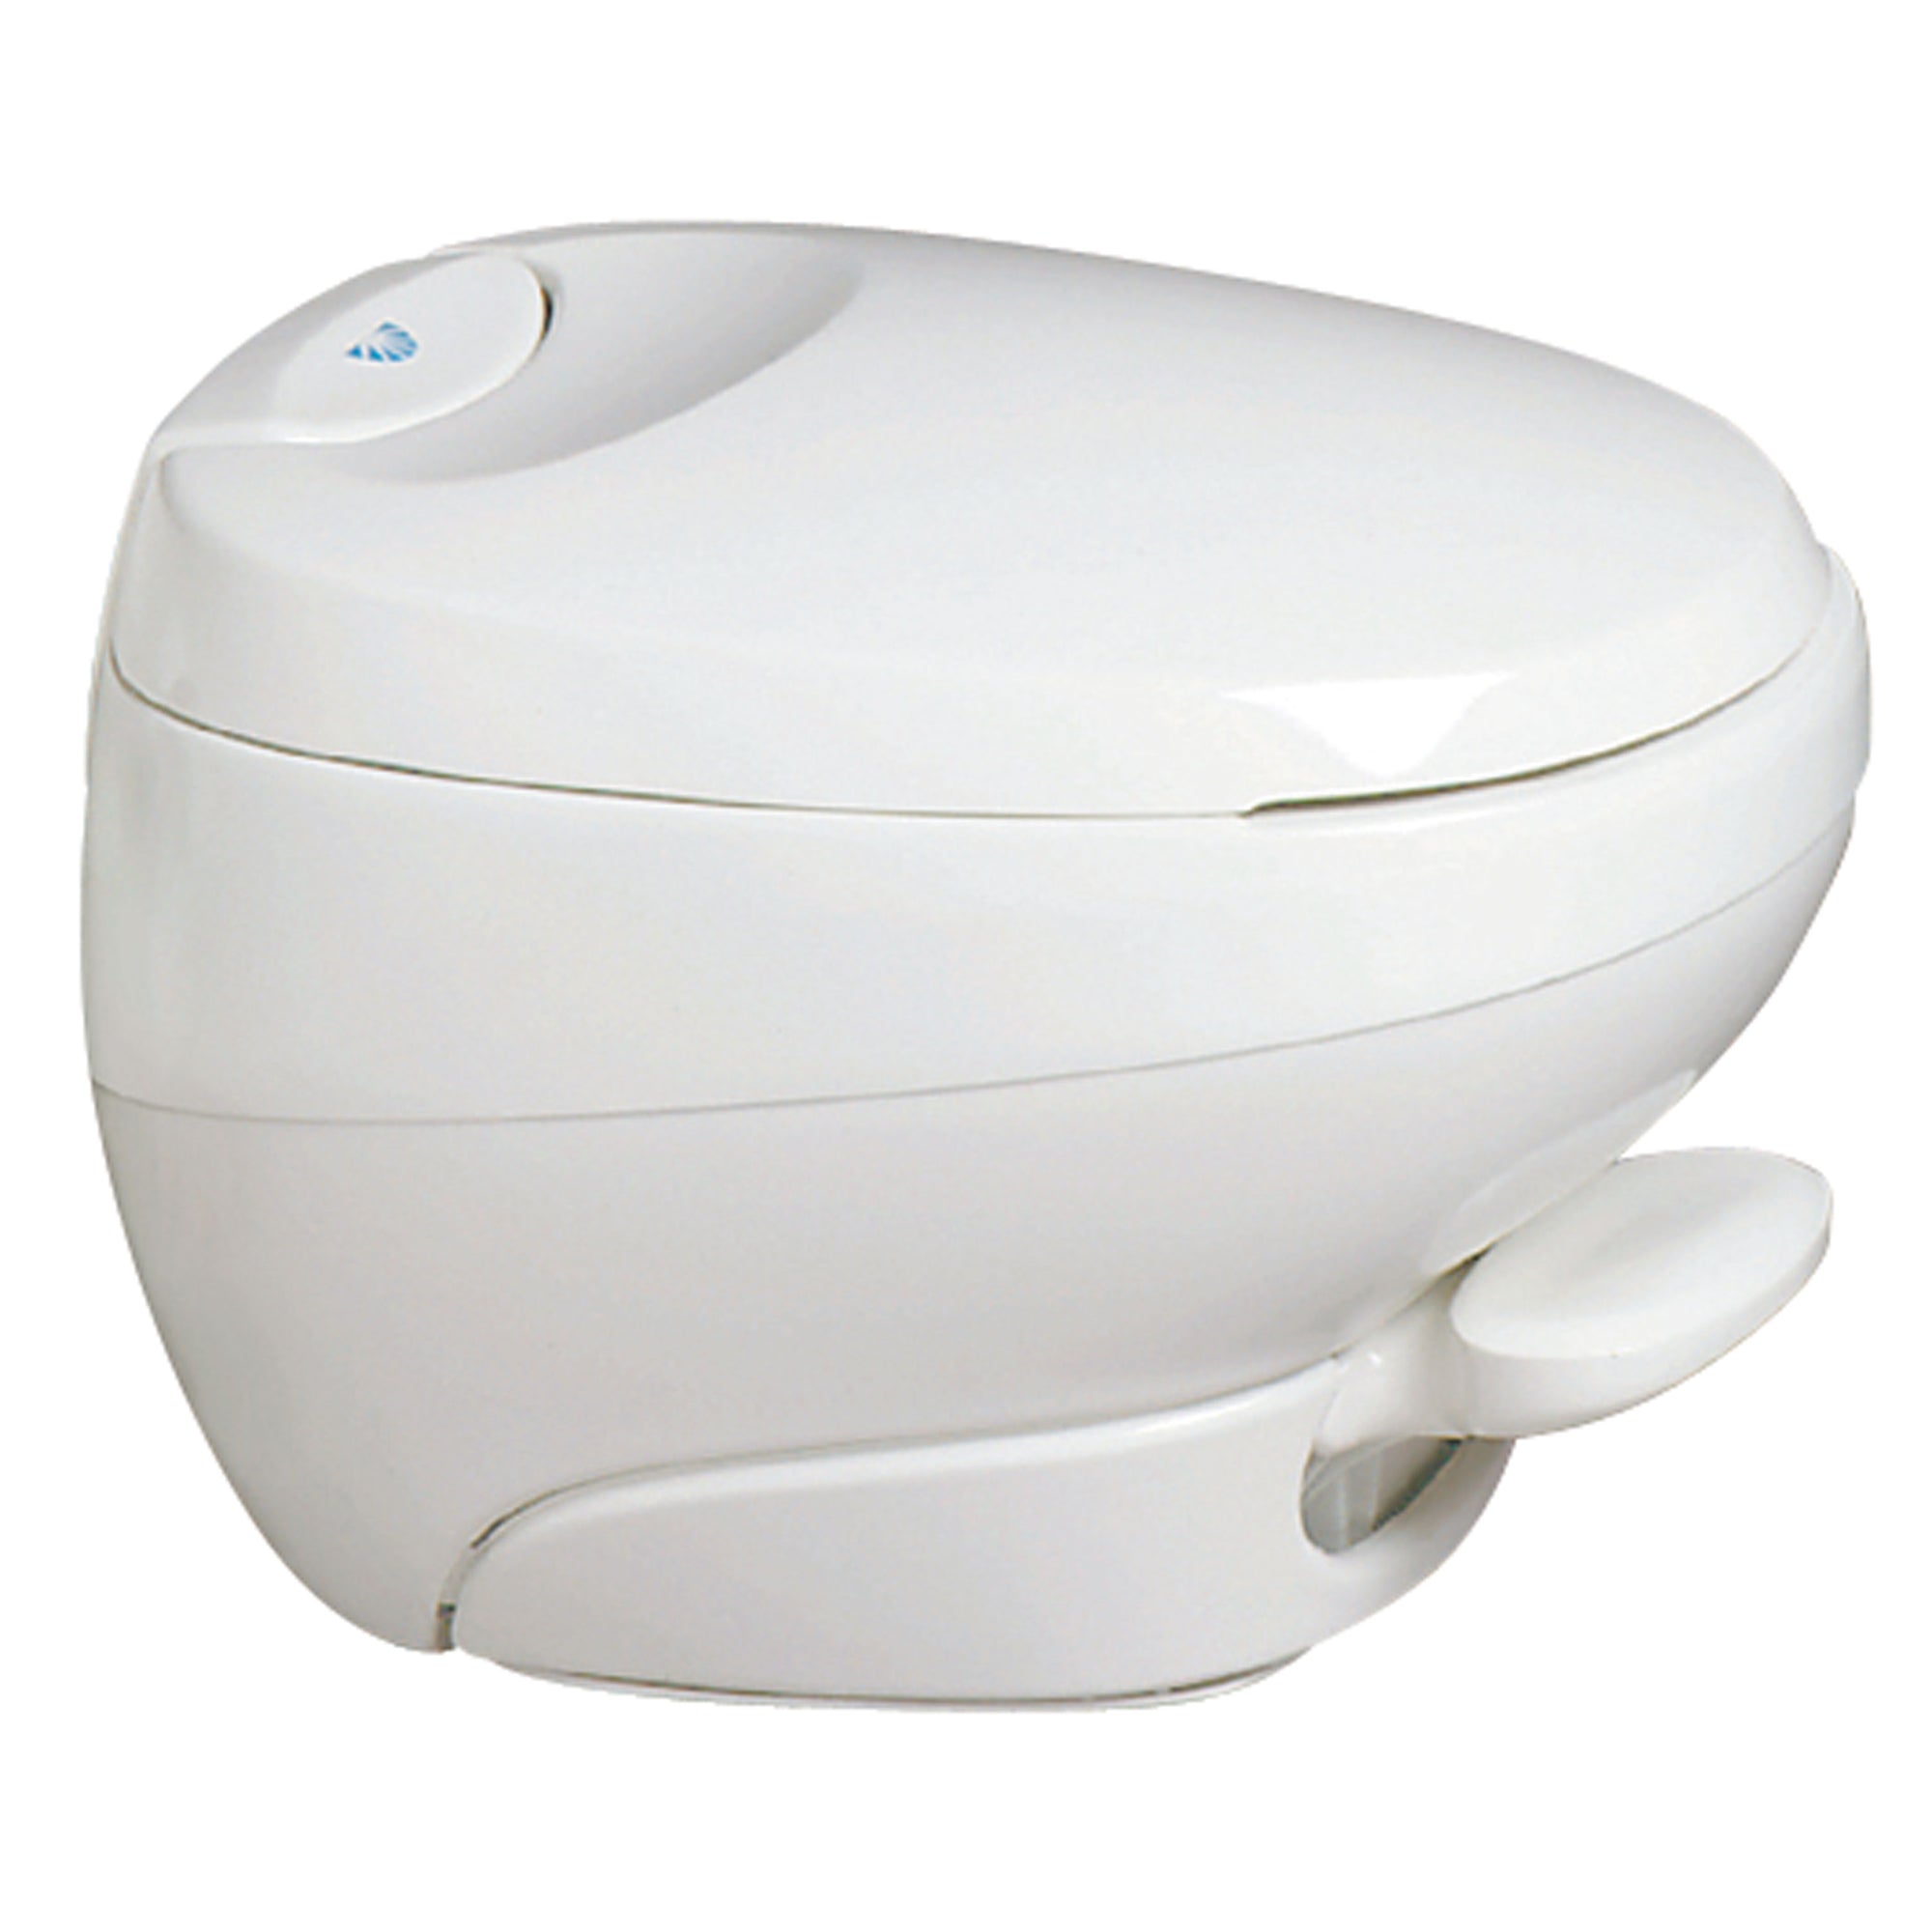 Thetford 31120 Bravura Toilet - Low, White